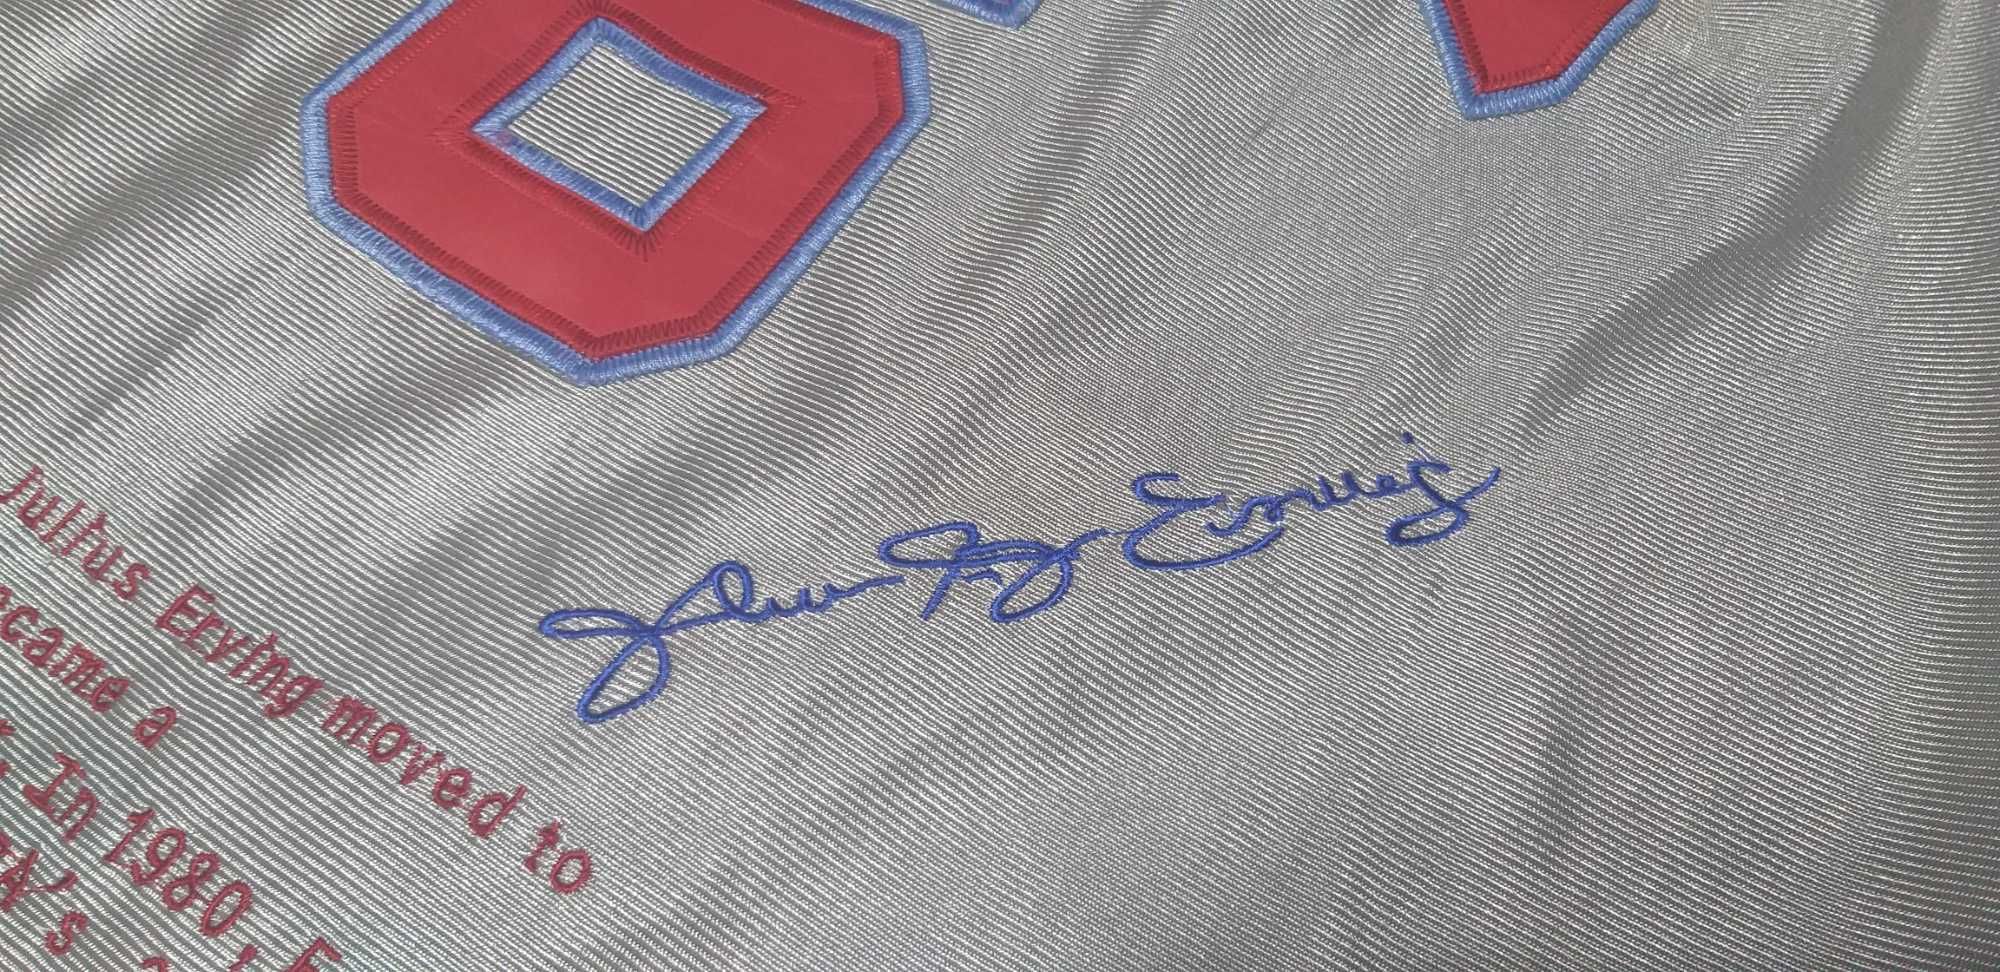 Maieu baschet Julius Erving, Philadelphia 76ers